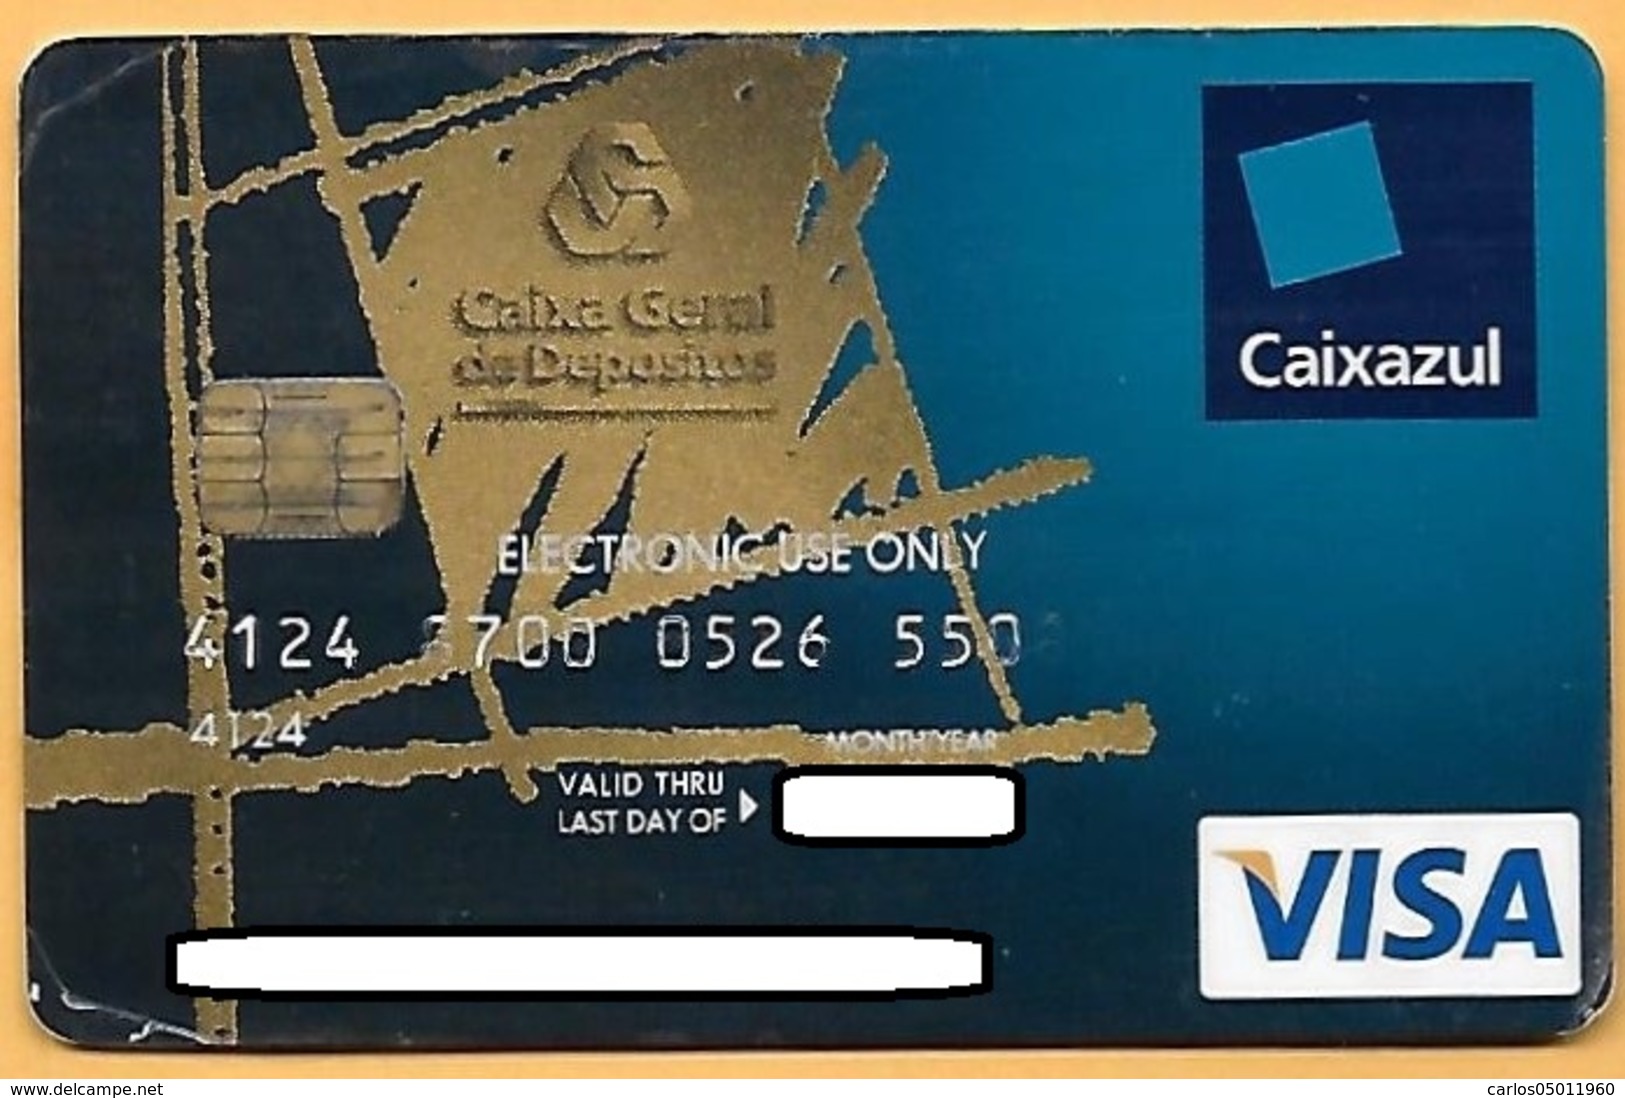 CREDIT / DEBIT CARD - CAIXA GERAL DEPÓSITOS 067 (PORTUGAL) - Cartes De Crédit (expiration Min. 10 Ans)